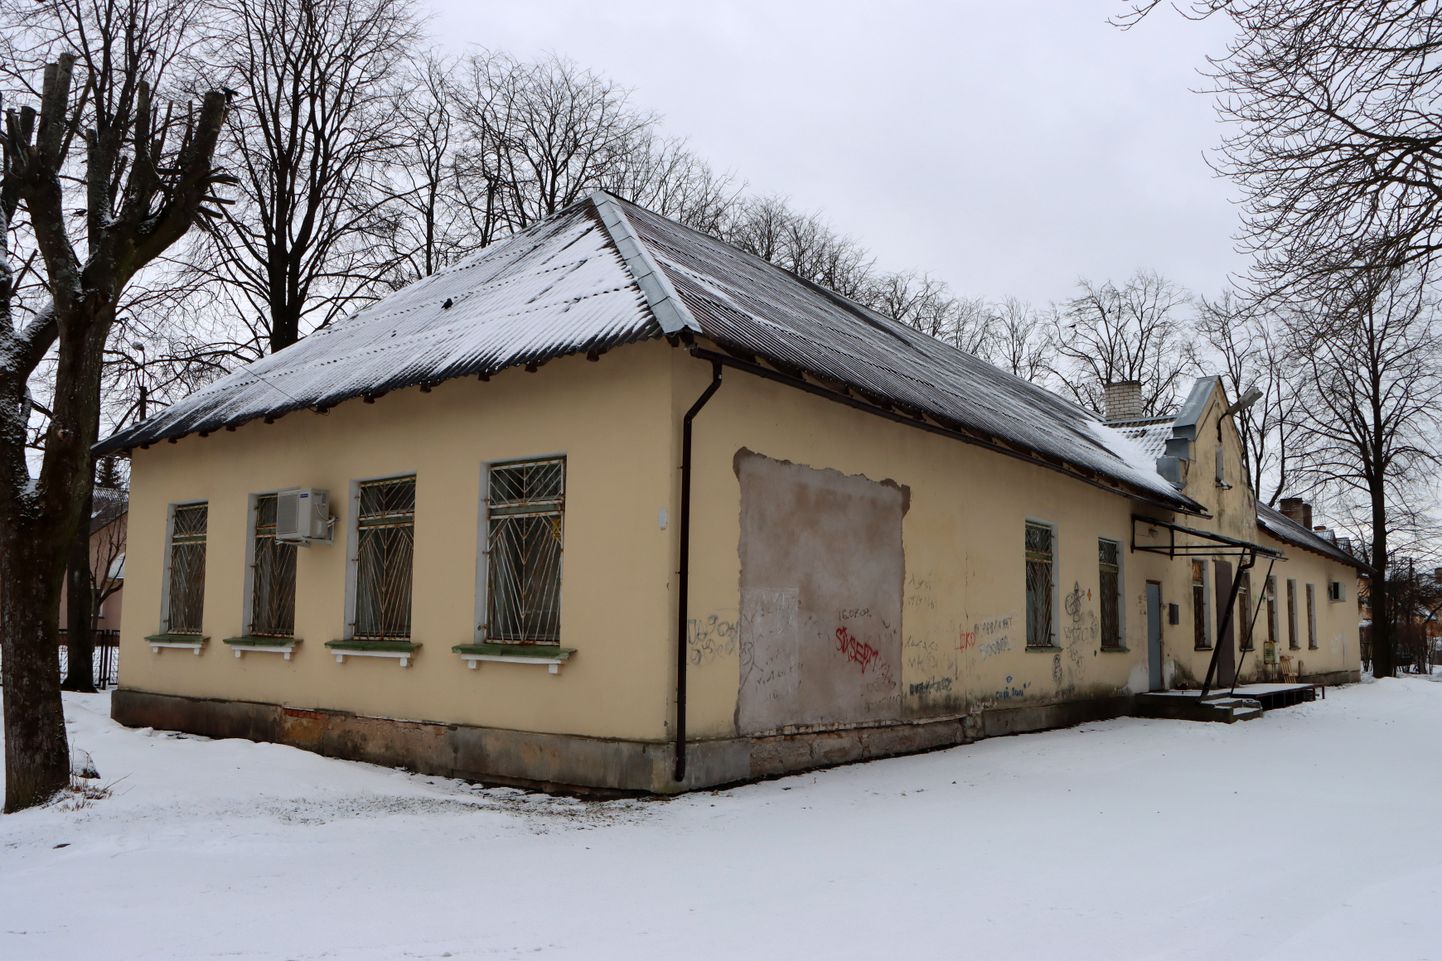 Обанкротившаяся швейная фирма "Lorinda" работала в бывшем здании детского сада на улице Пярна в Кохтла-Ярве.